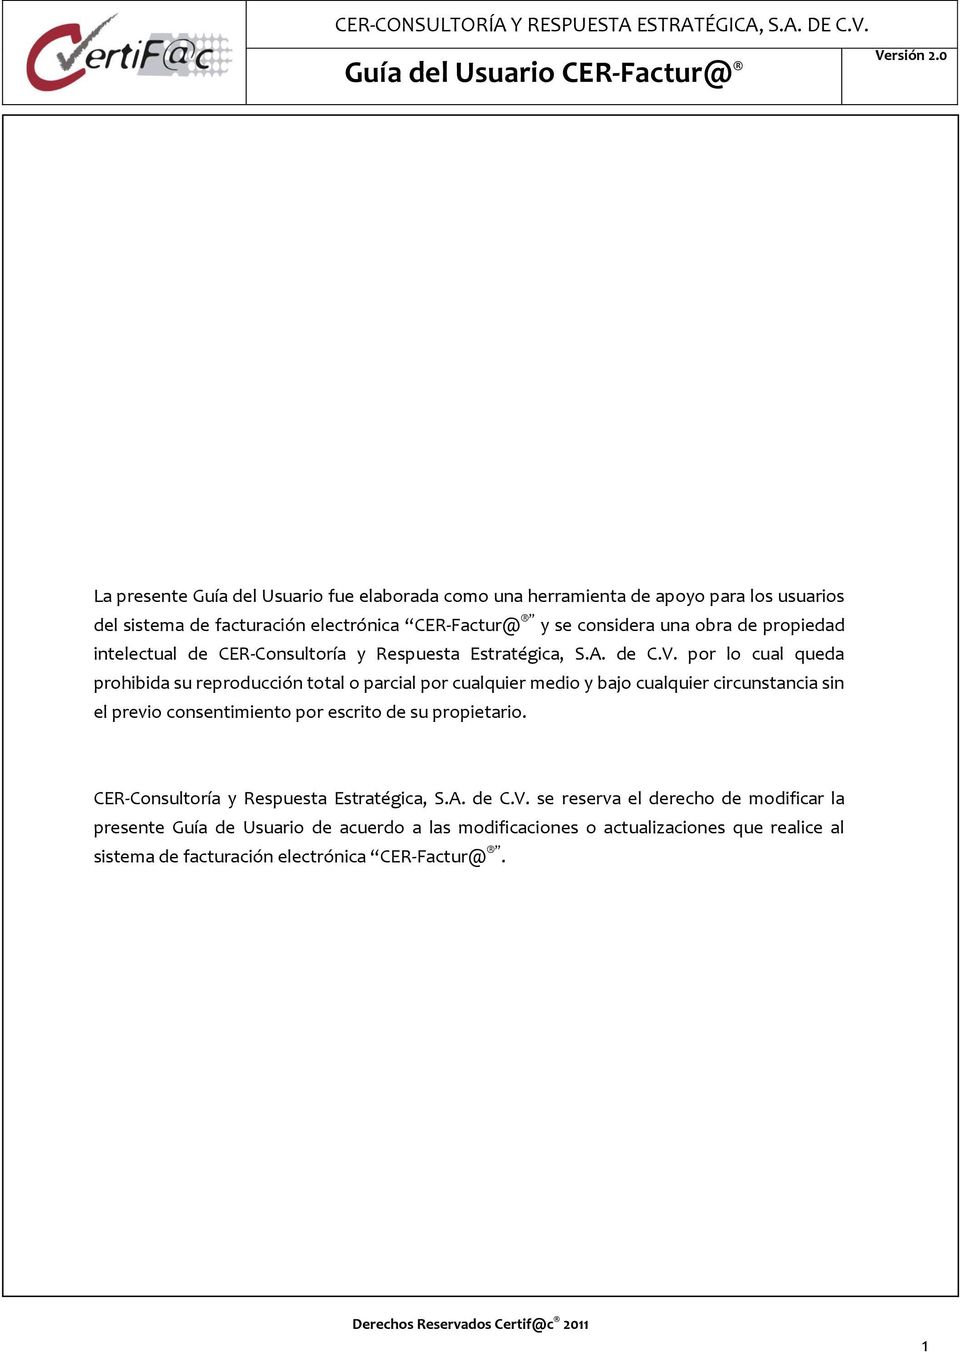 propiedad intelectual de CER-Consultoría y Respuesta Estratégica, S.A. de C.V.